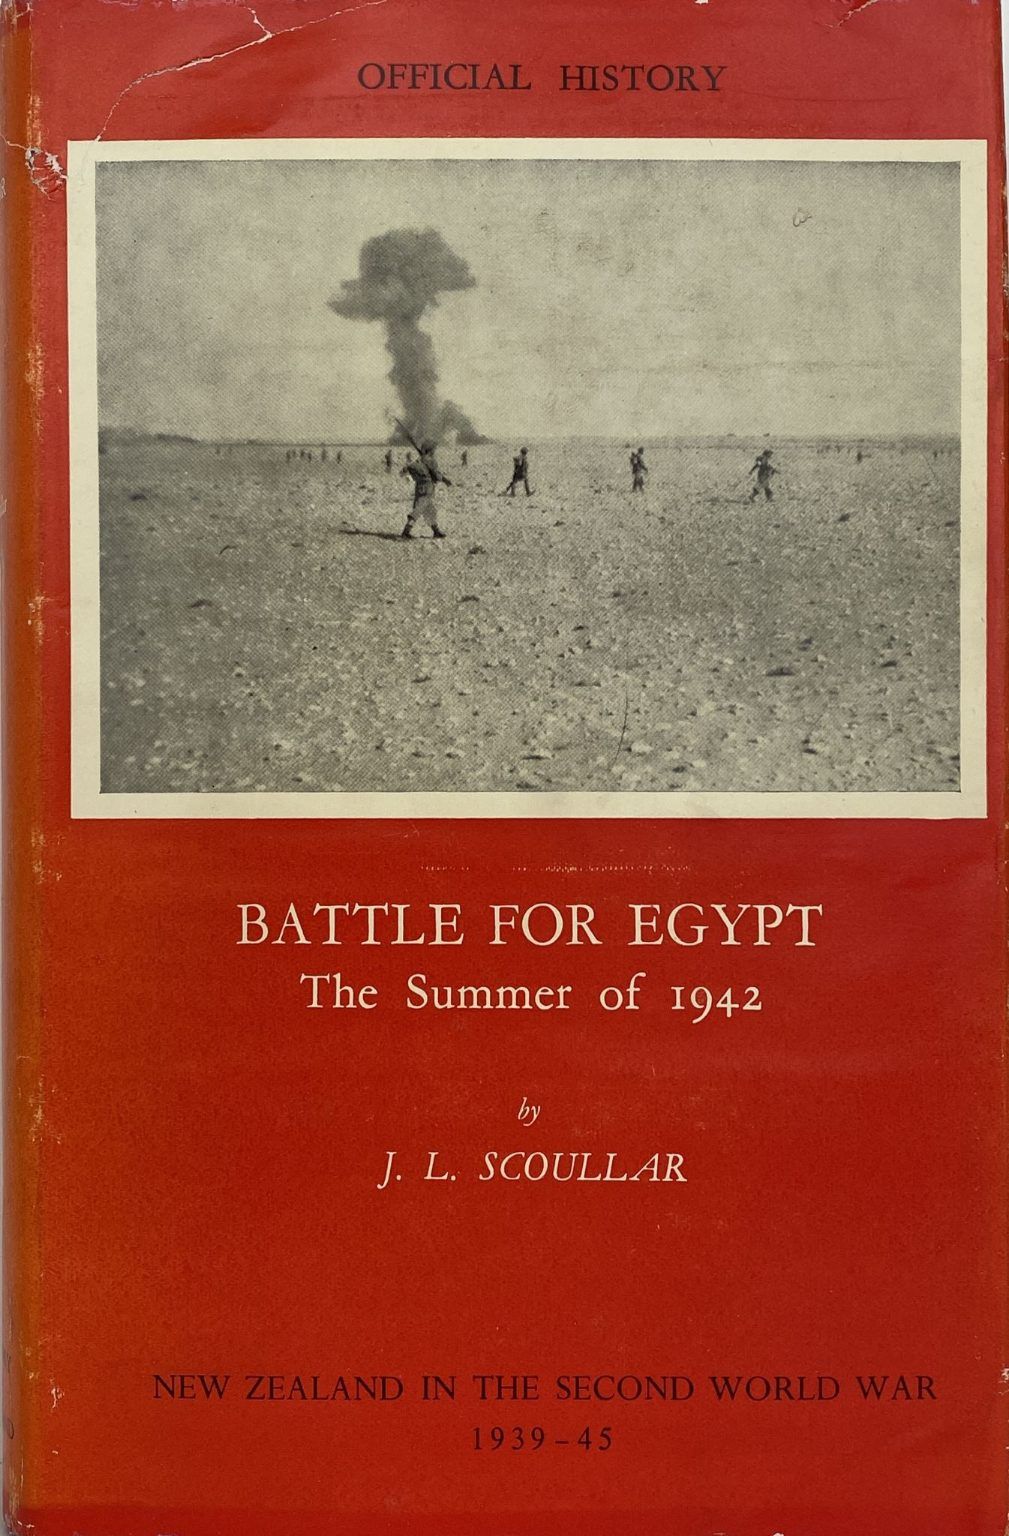 BATTLE FOR EGYPT: The Summer of 1942